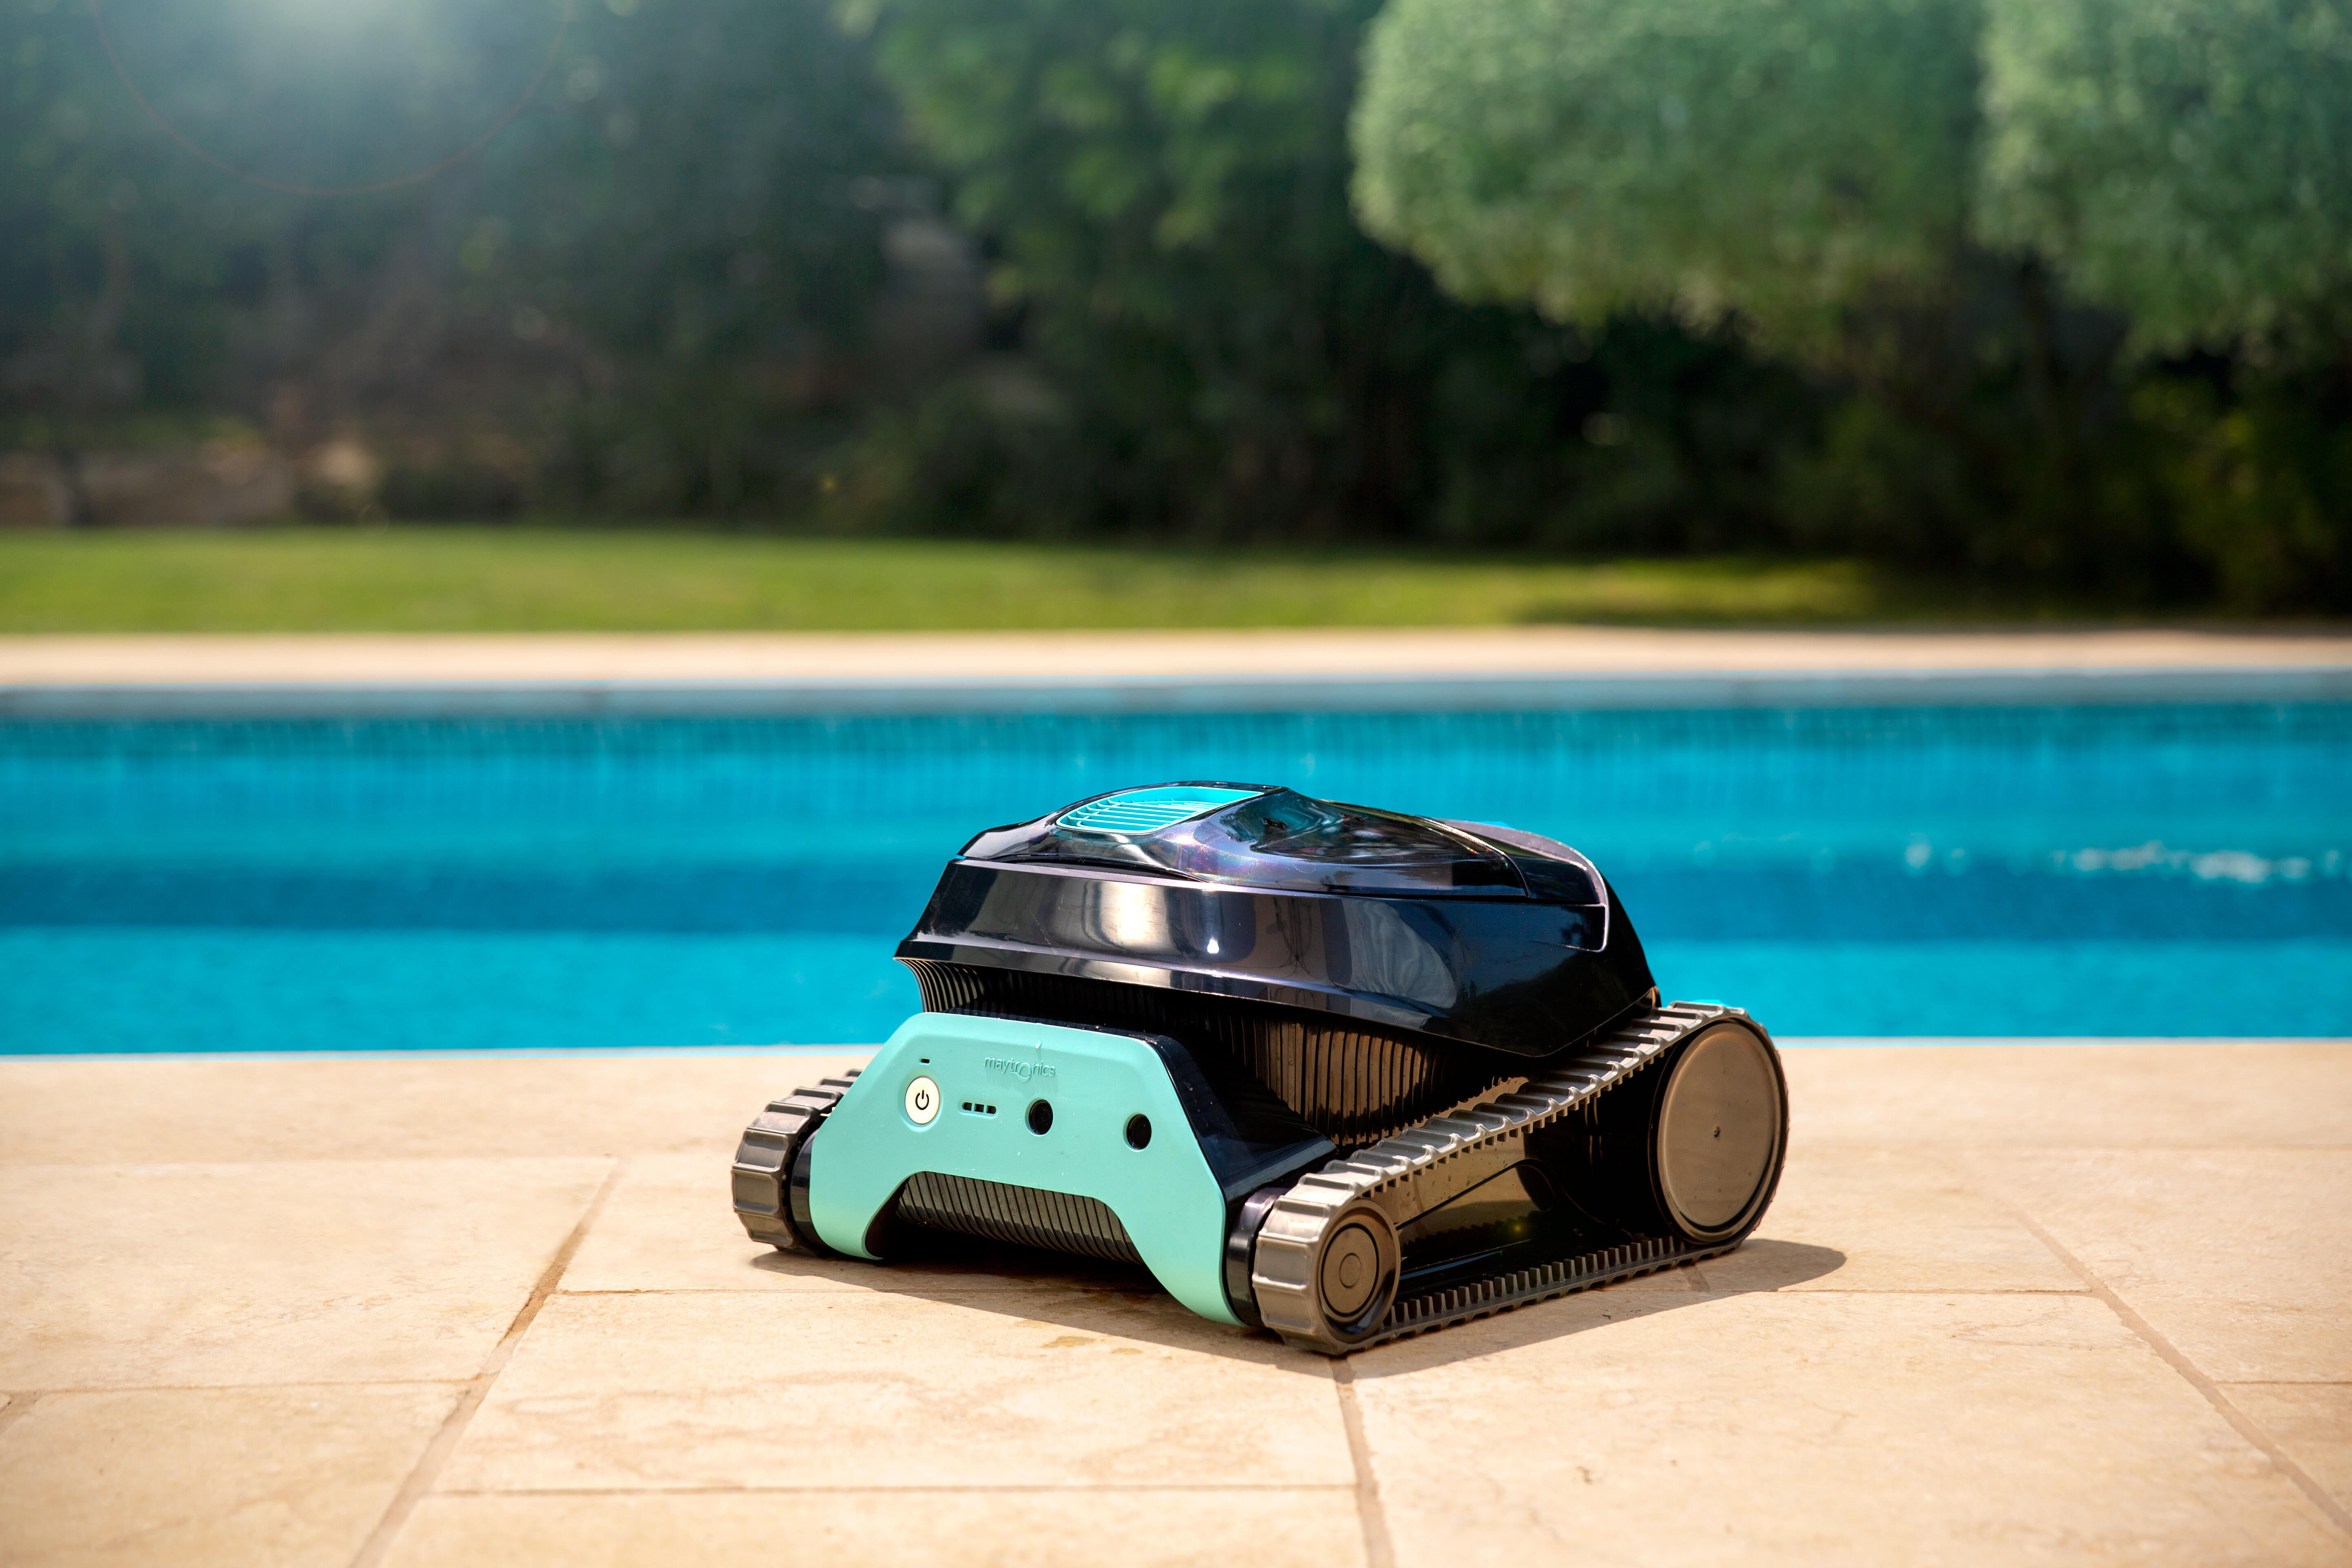 Robots limpiafondos a batería, lo mejor para limpiar piscinas